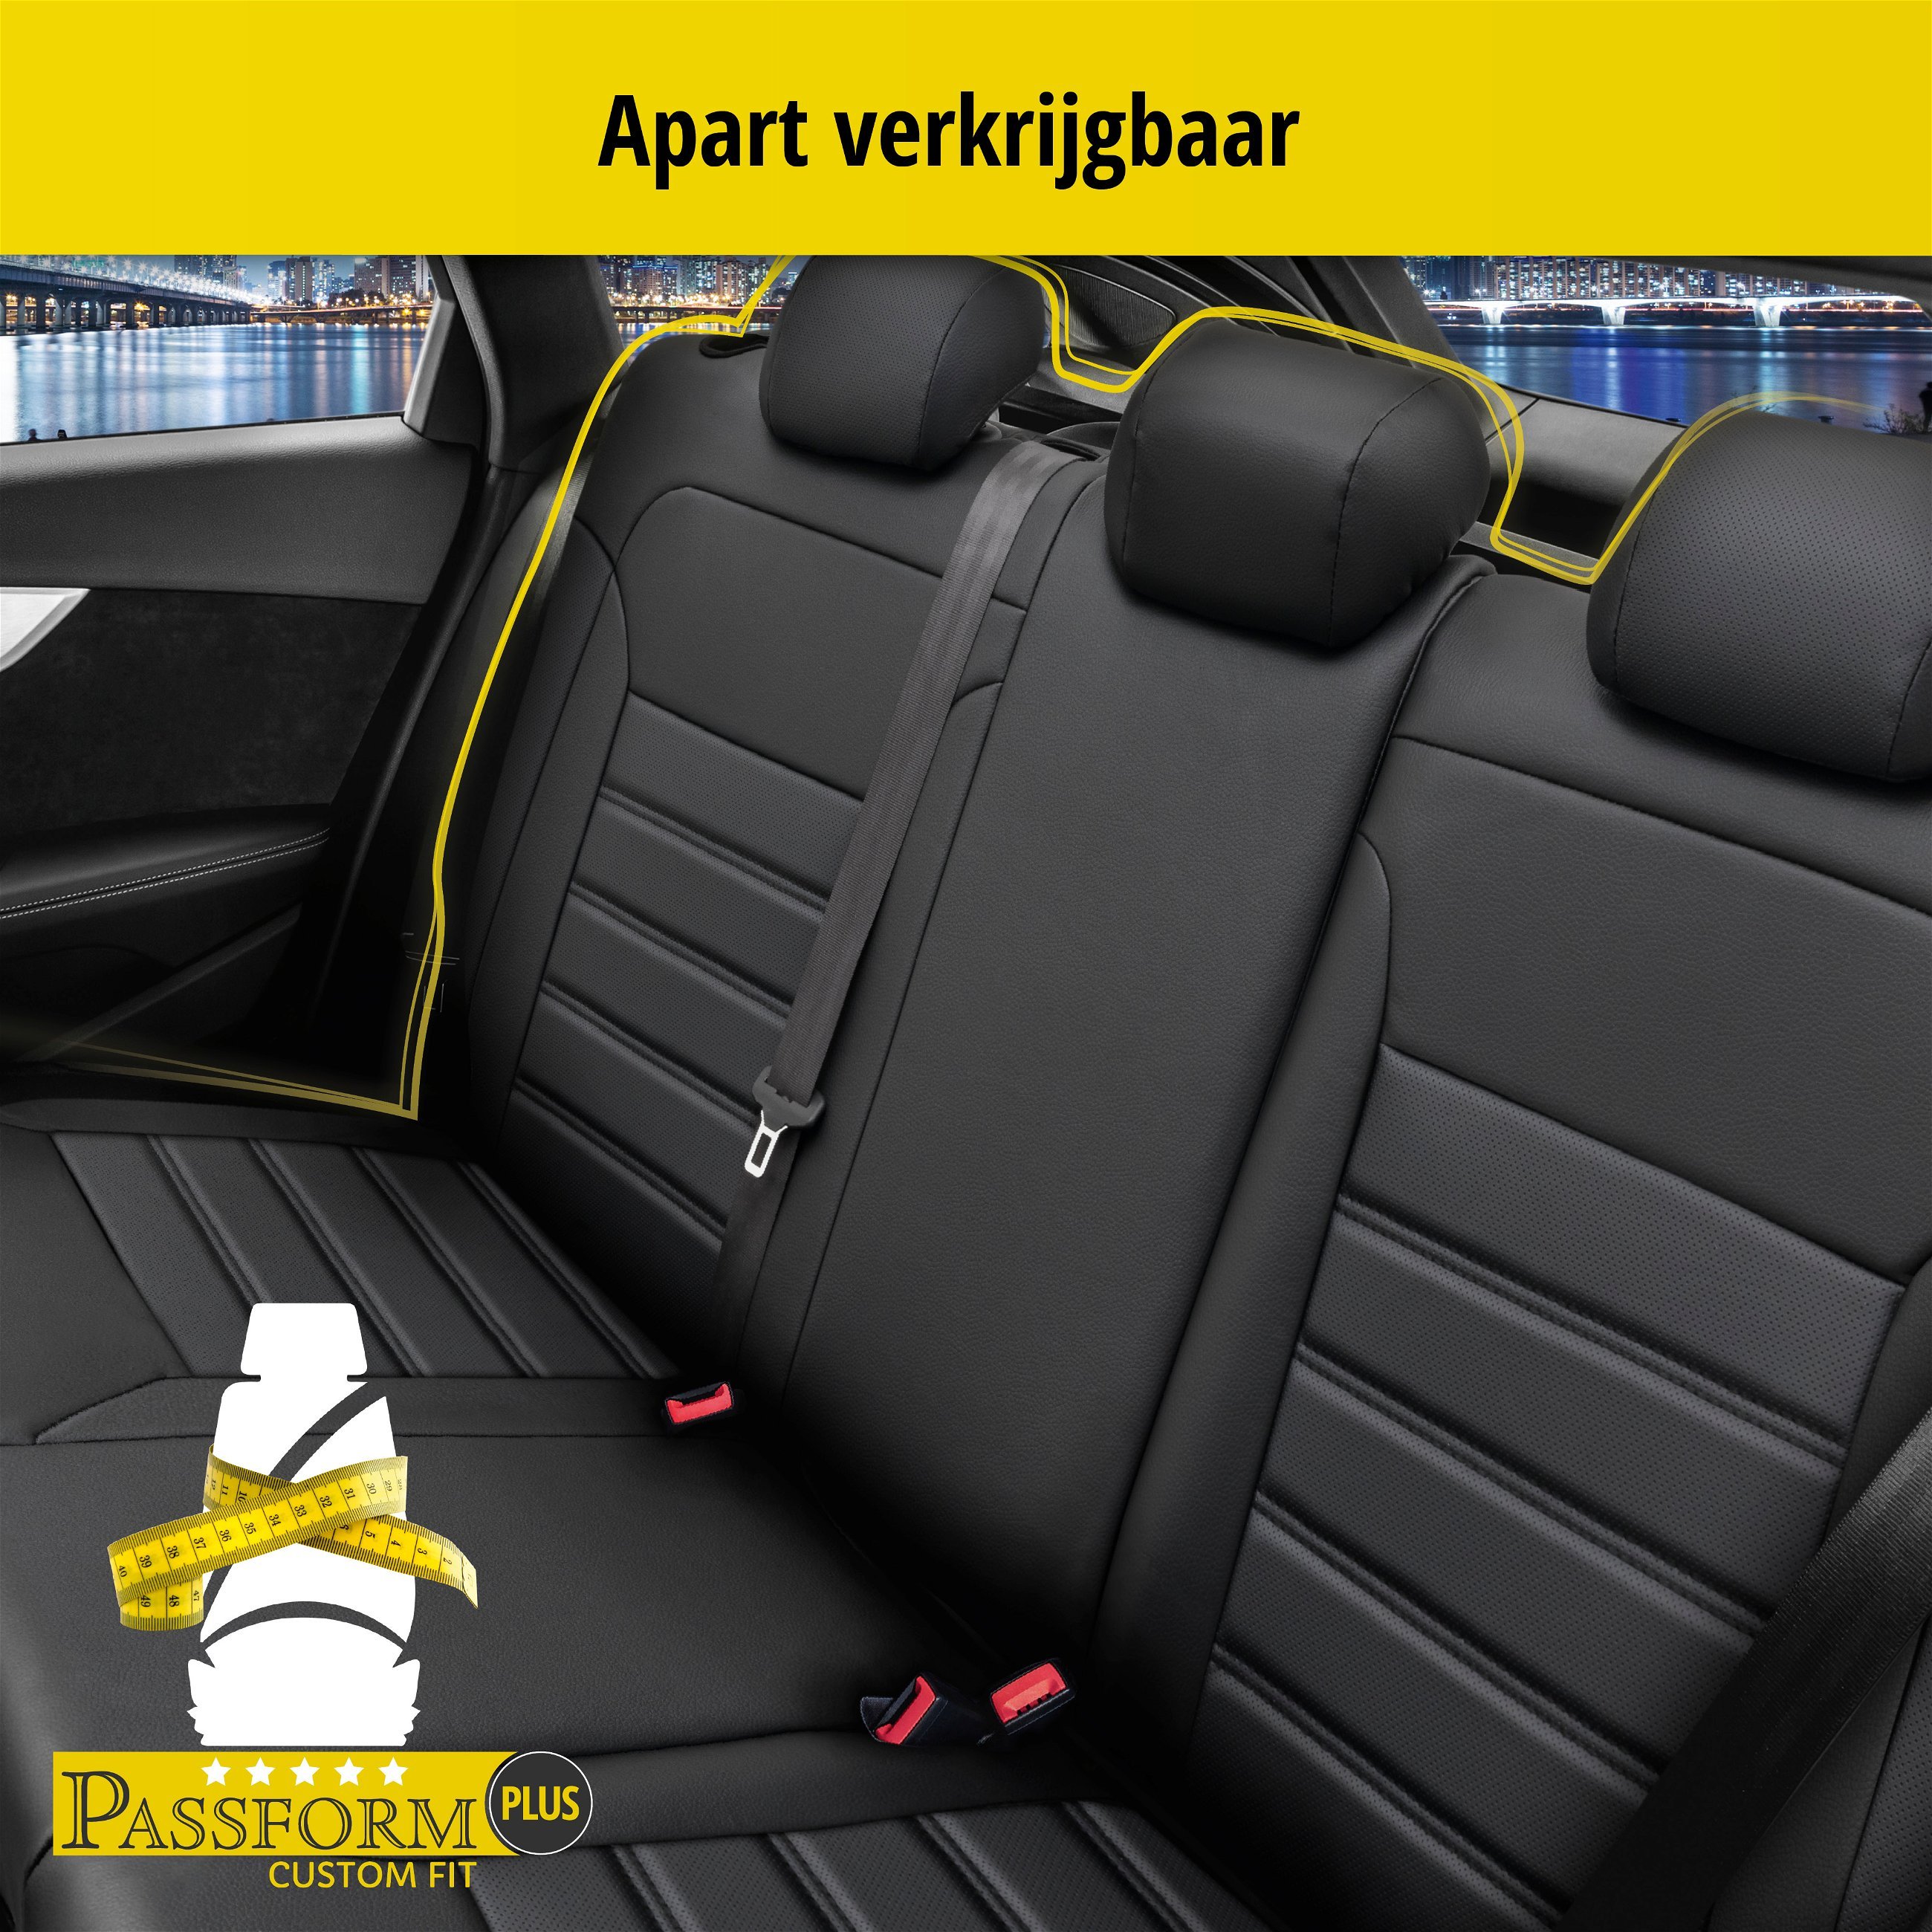 Auto stoelbekleding Robusto geschikt voor Peugeot 208 I 03/2012-03/2020, 2 enkele zetelhoezen voor standard zetels